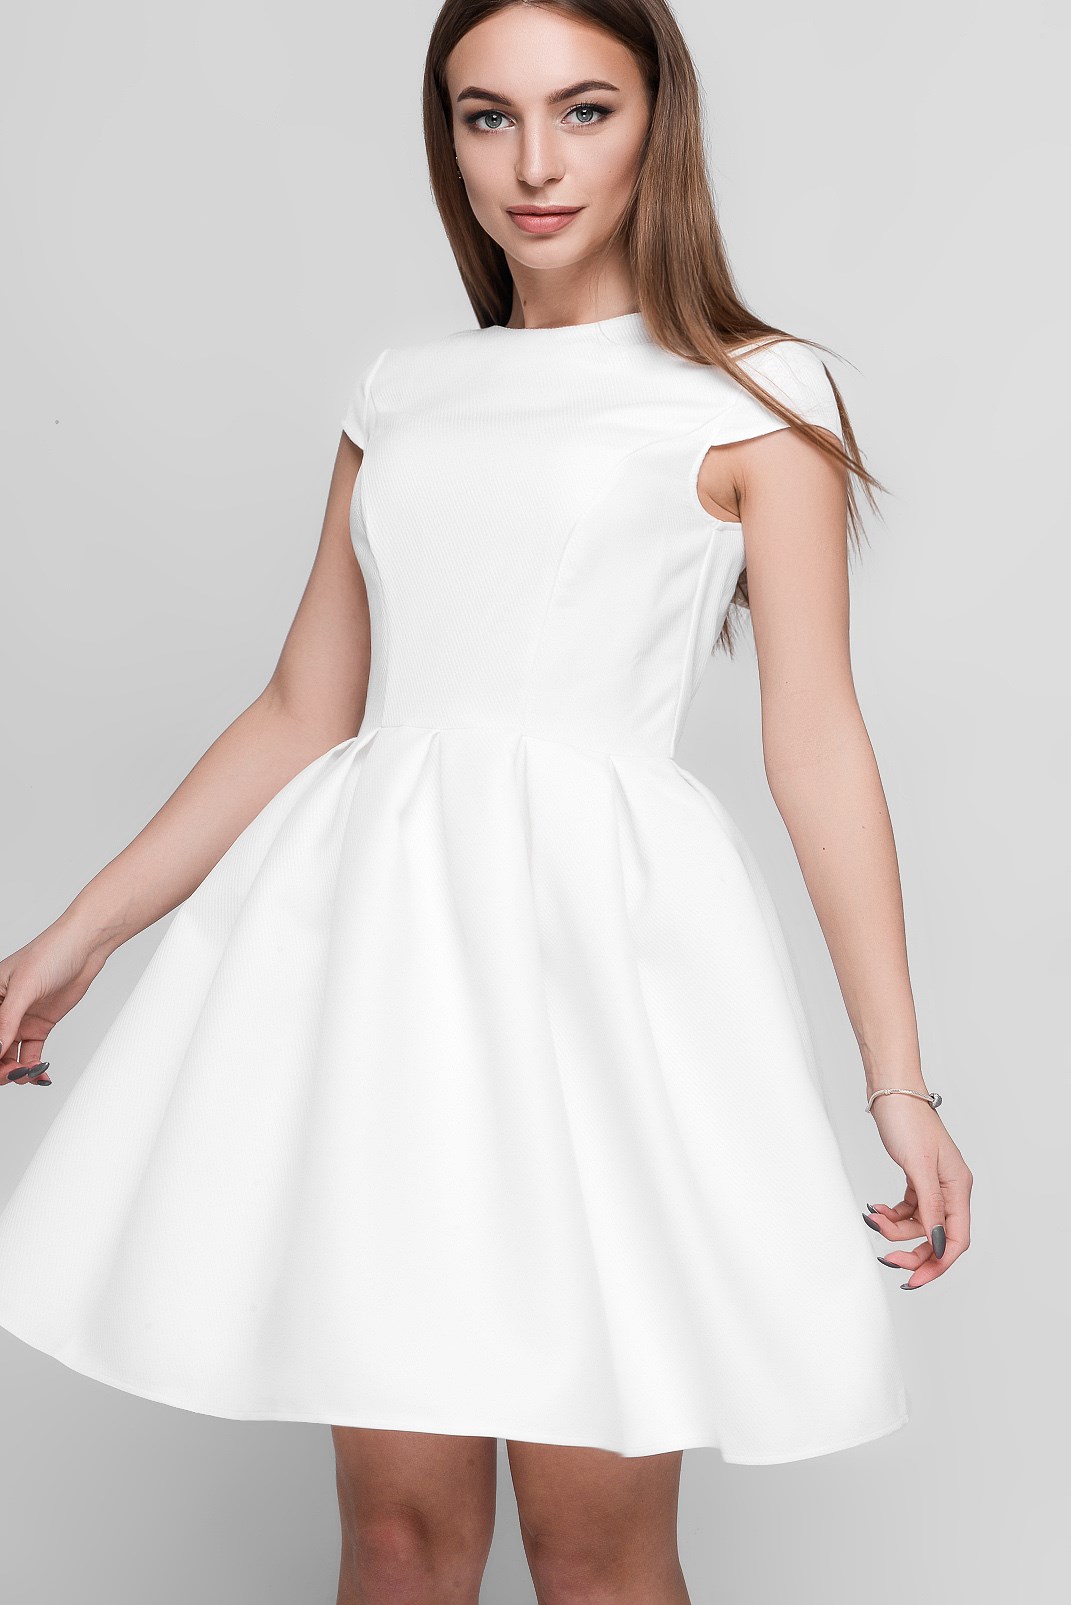 Платье KP-5935-3, (Молоко)